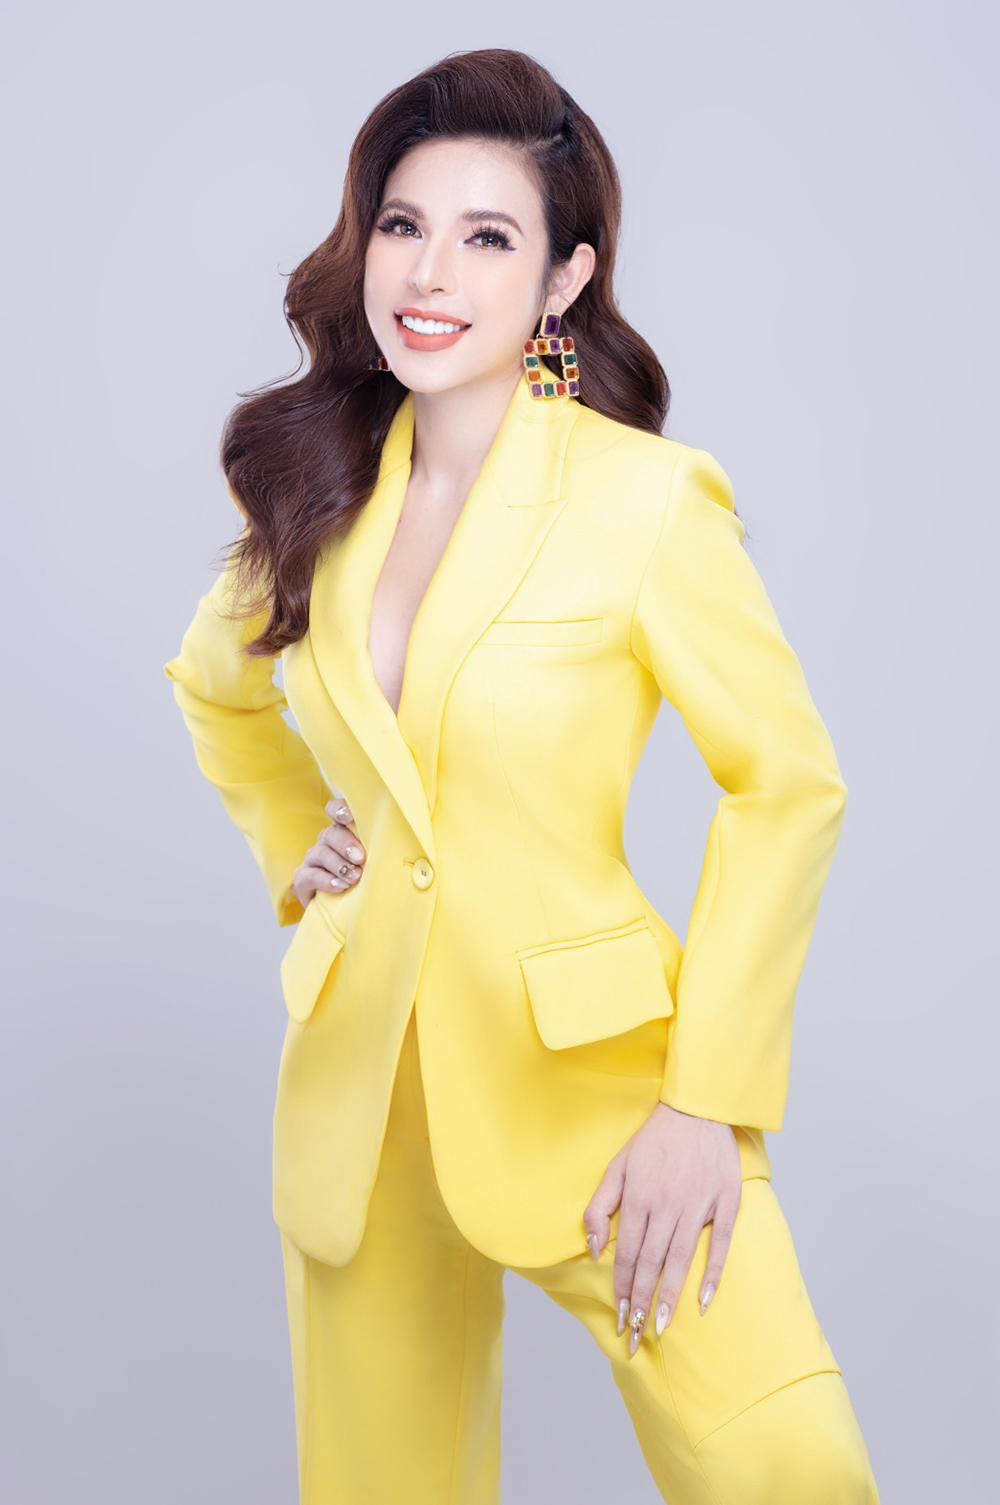 CEO Mã Hồng trẻ trung, xinh đẹp